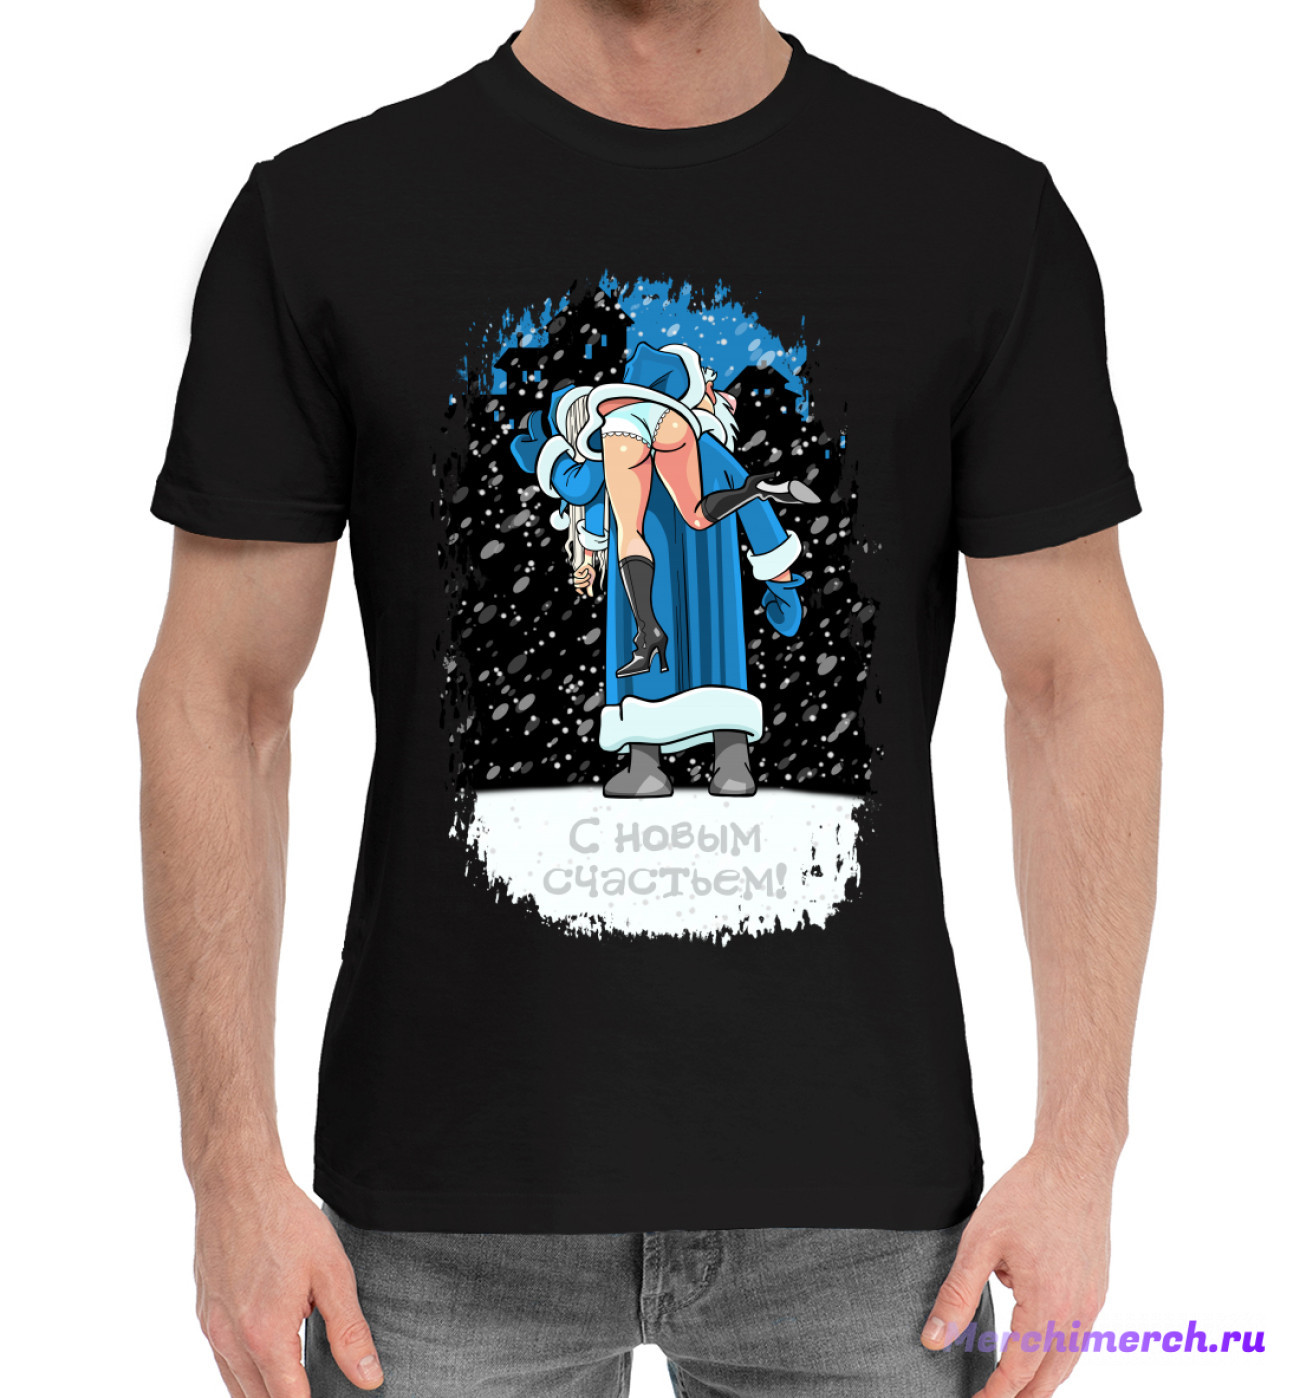 Мужская Хлопковая футболка С новым счастьем, артикул: DMZ-482277-hfu-2